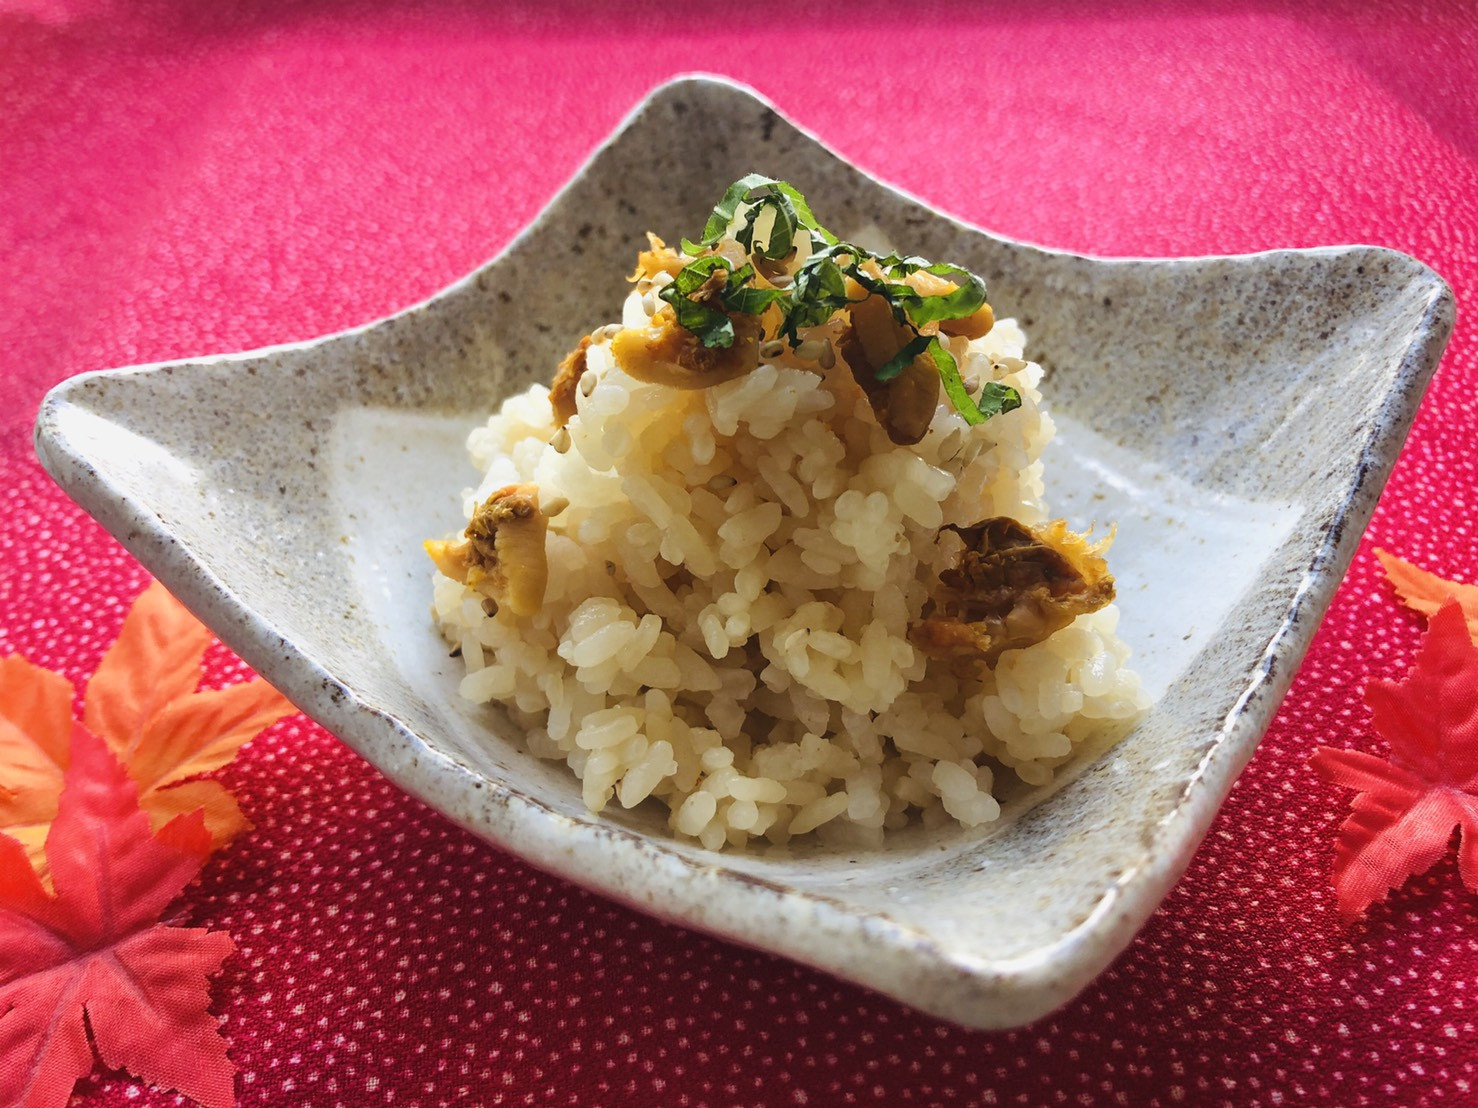 洋野町種市産の天然ホヤと炊き立てのご飯を混ぜ合わせた美味しい「ほや御飯」です